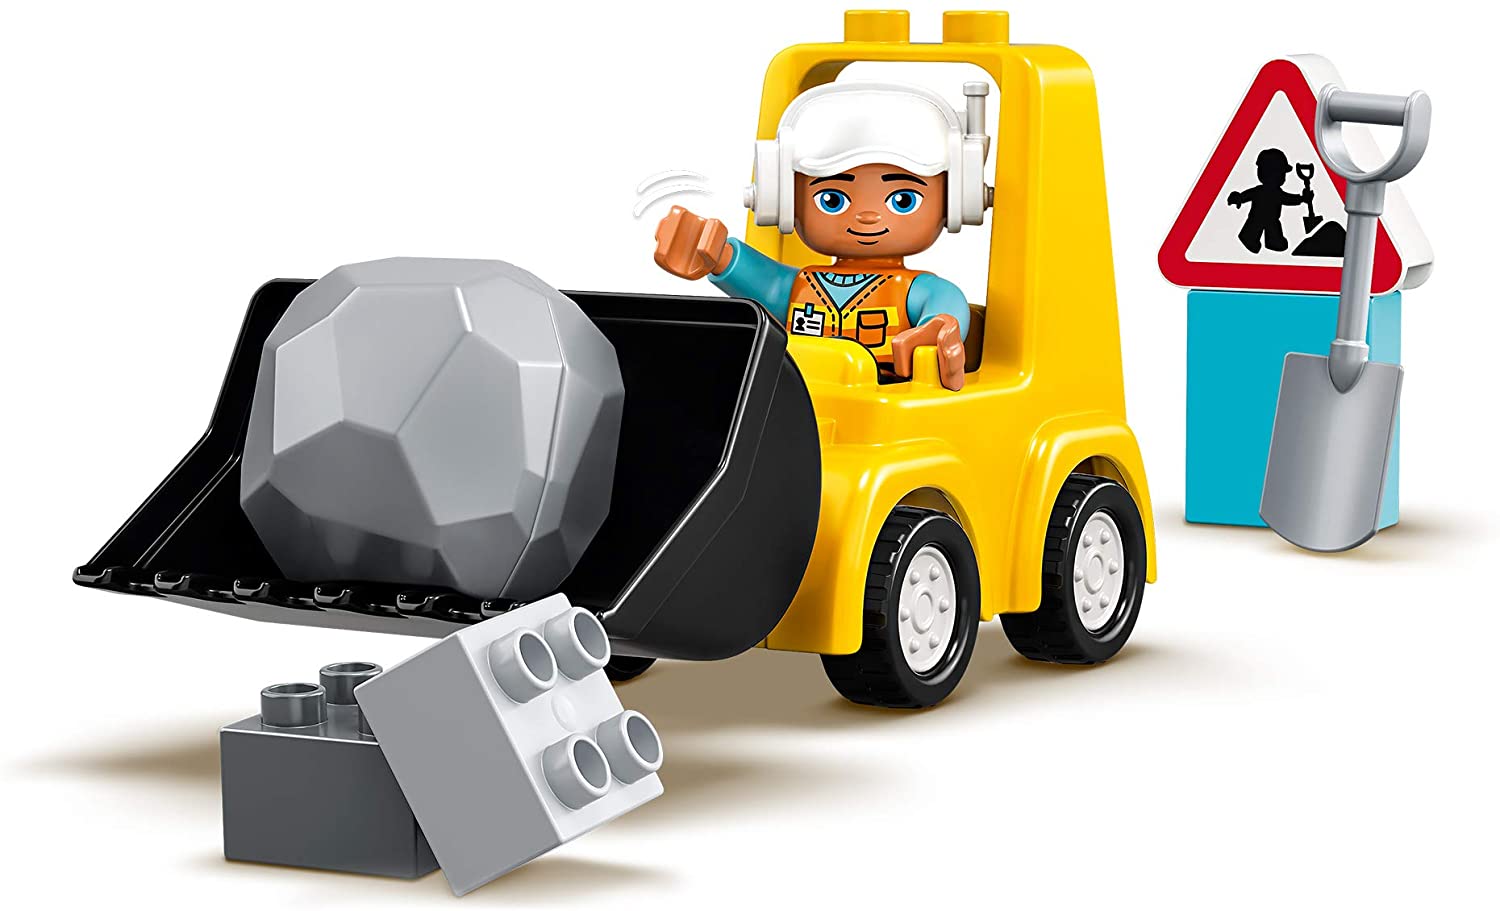 Lego-Buldozer | LEGO image3